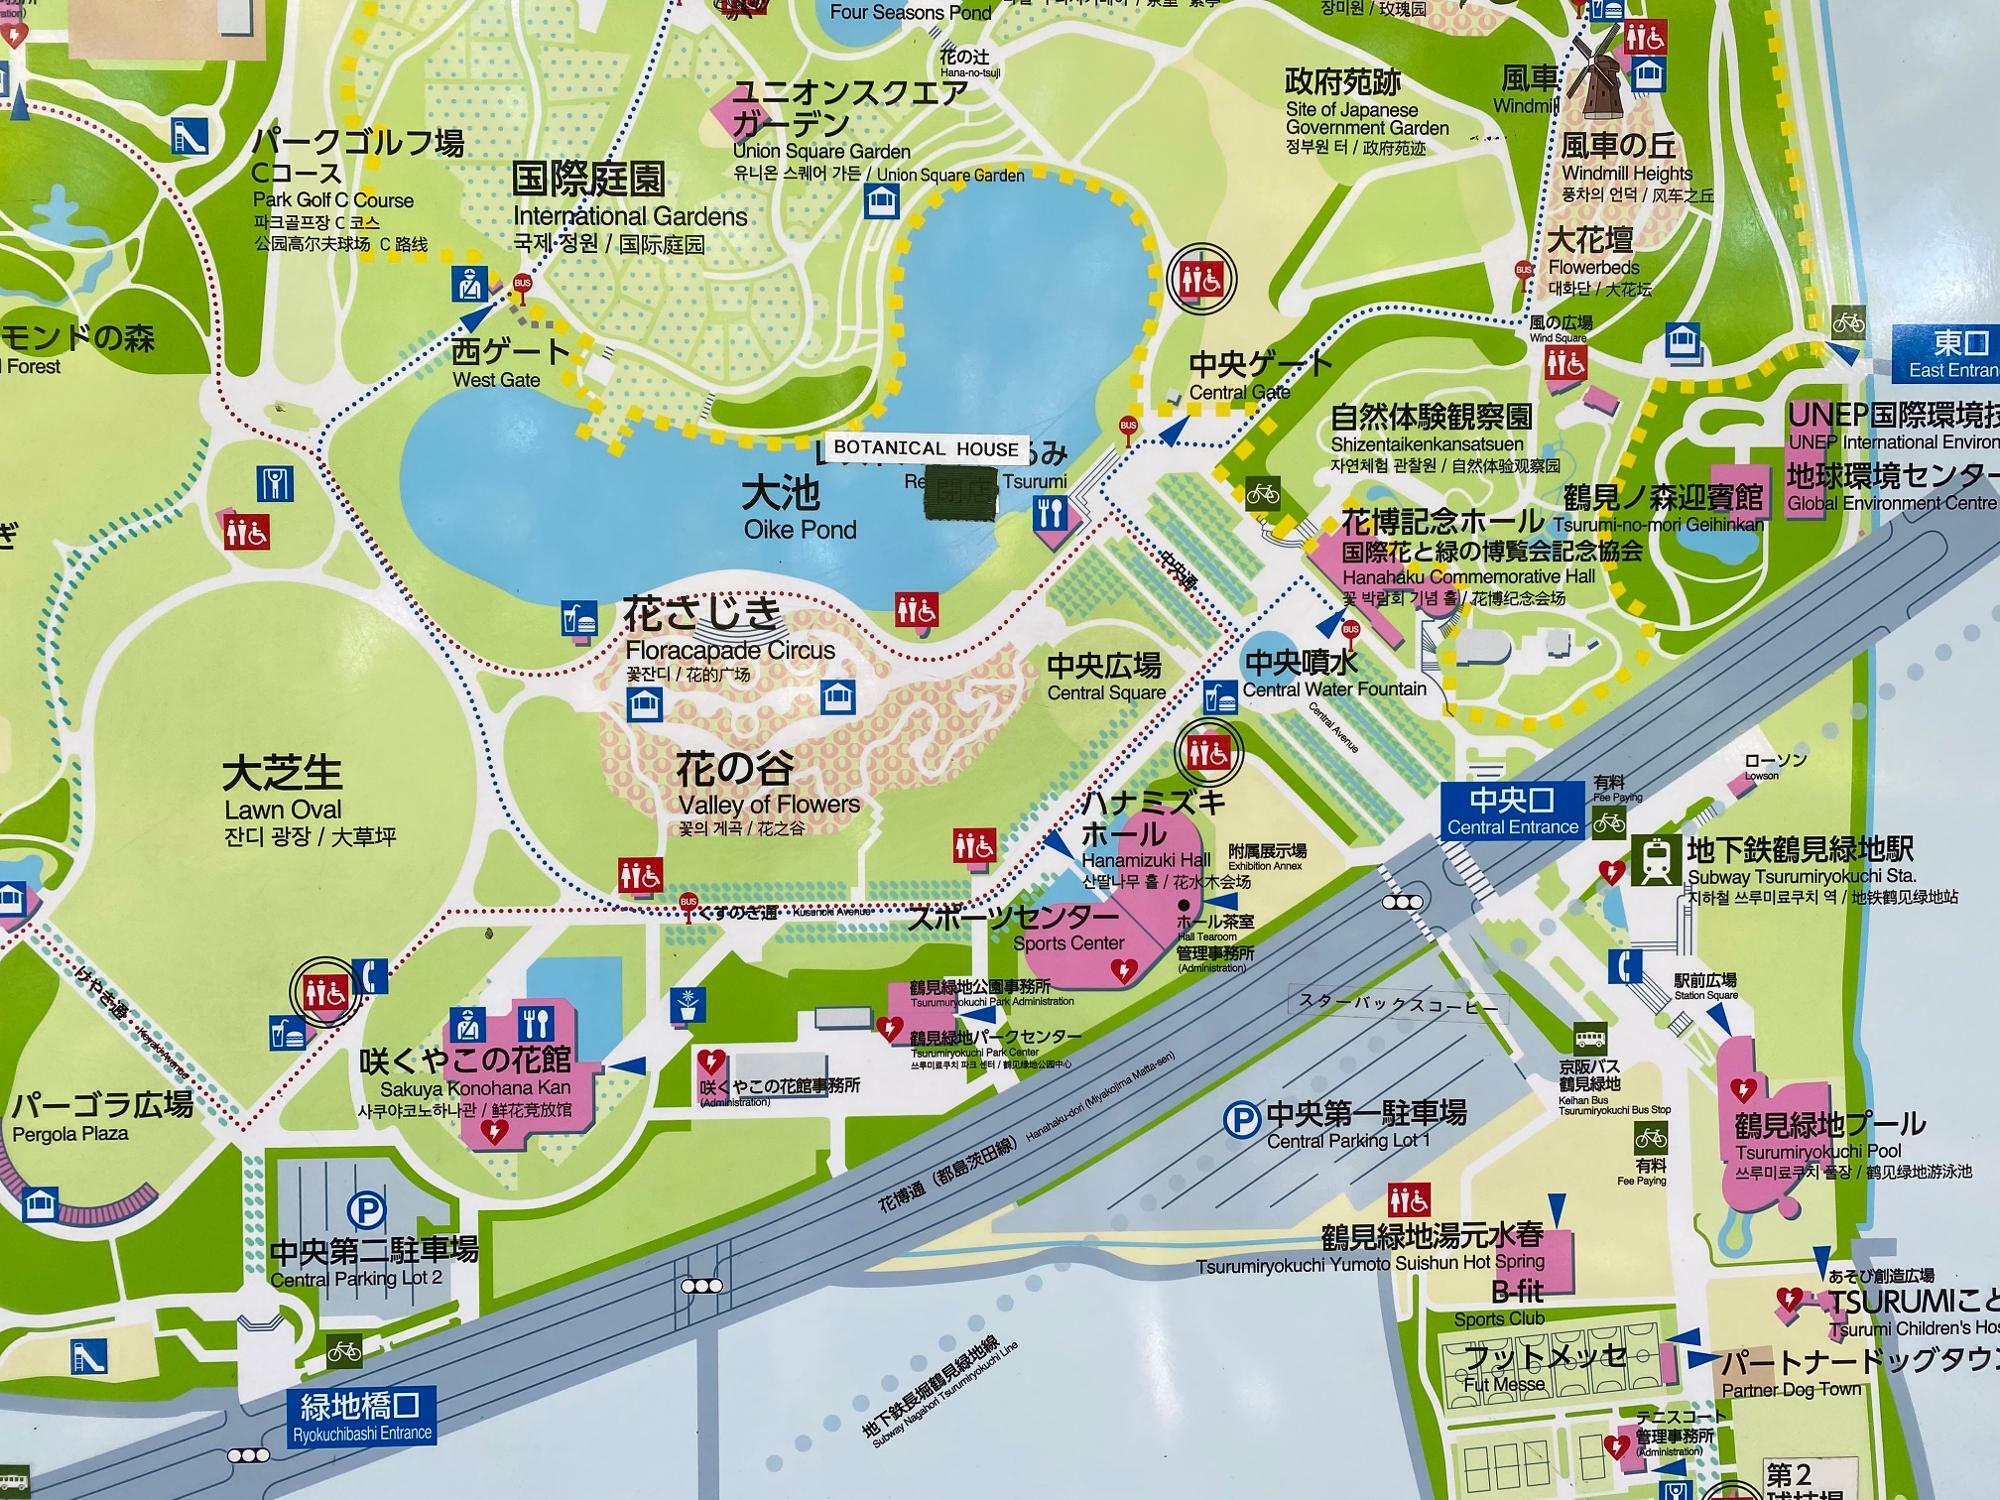 イベント開催周辺の園内マップ